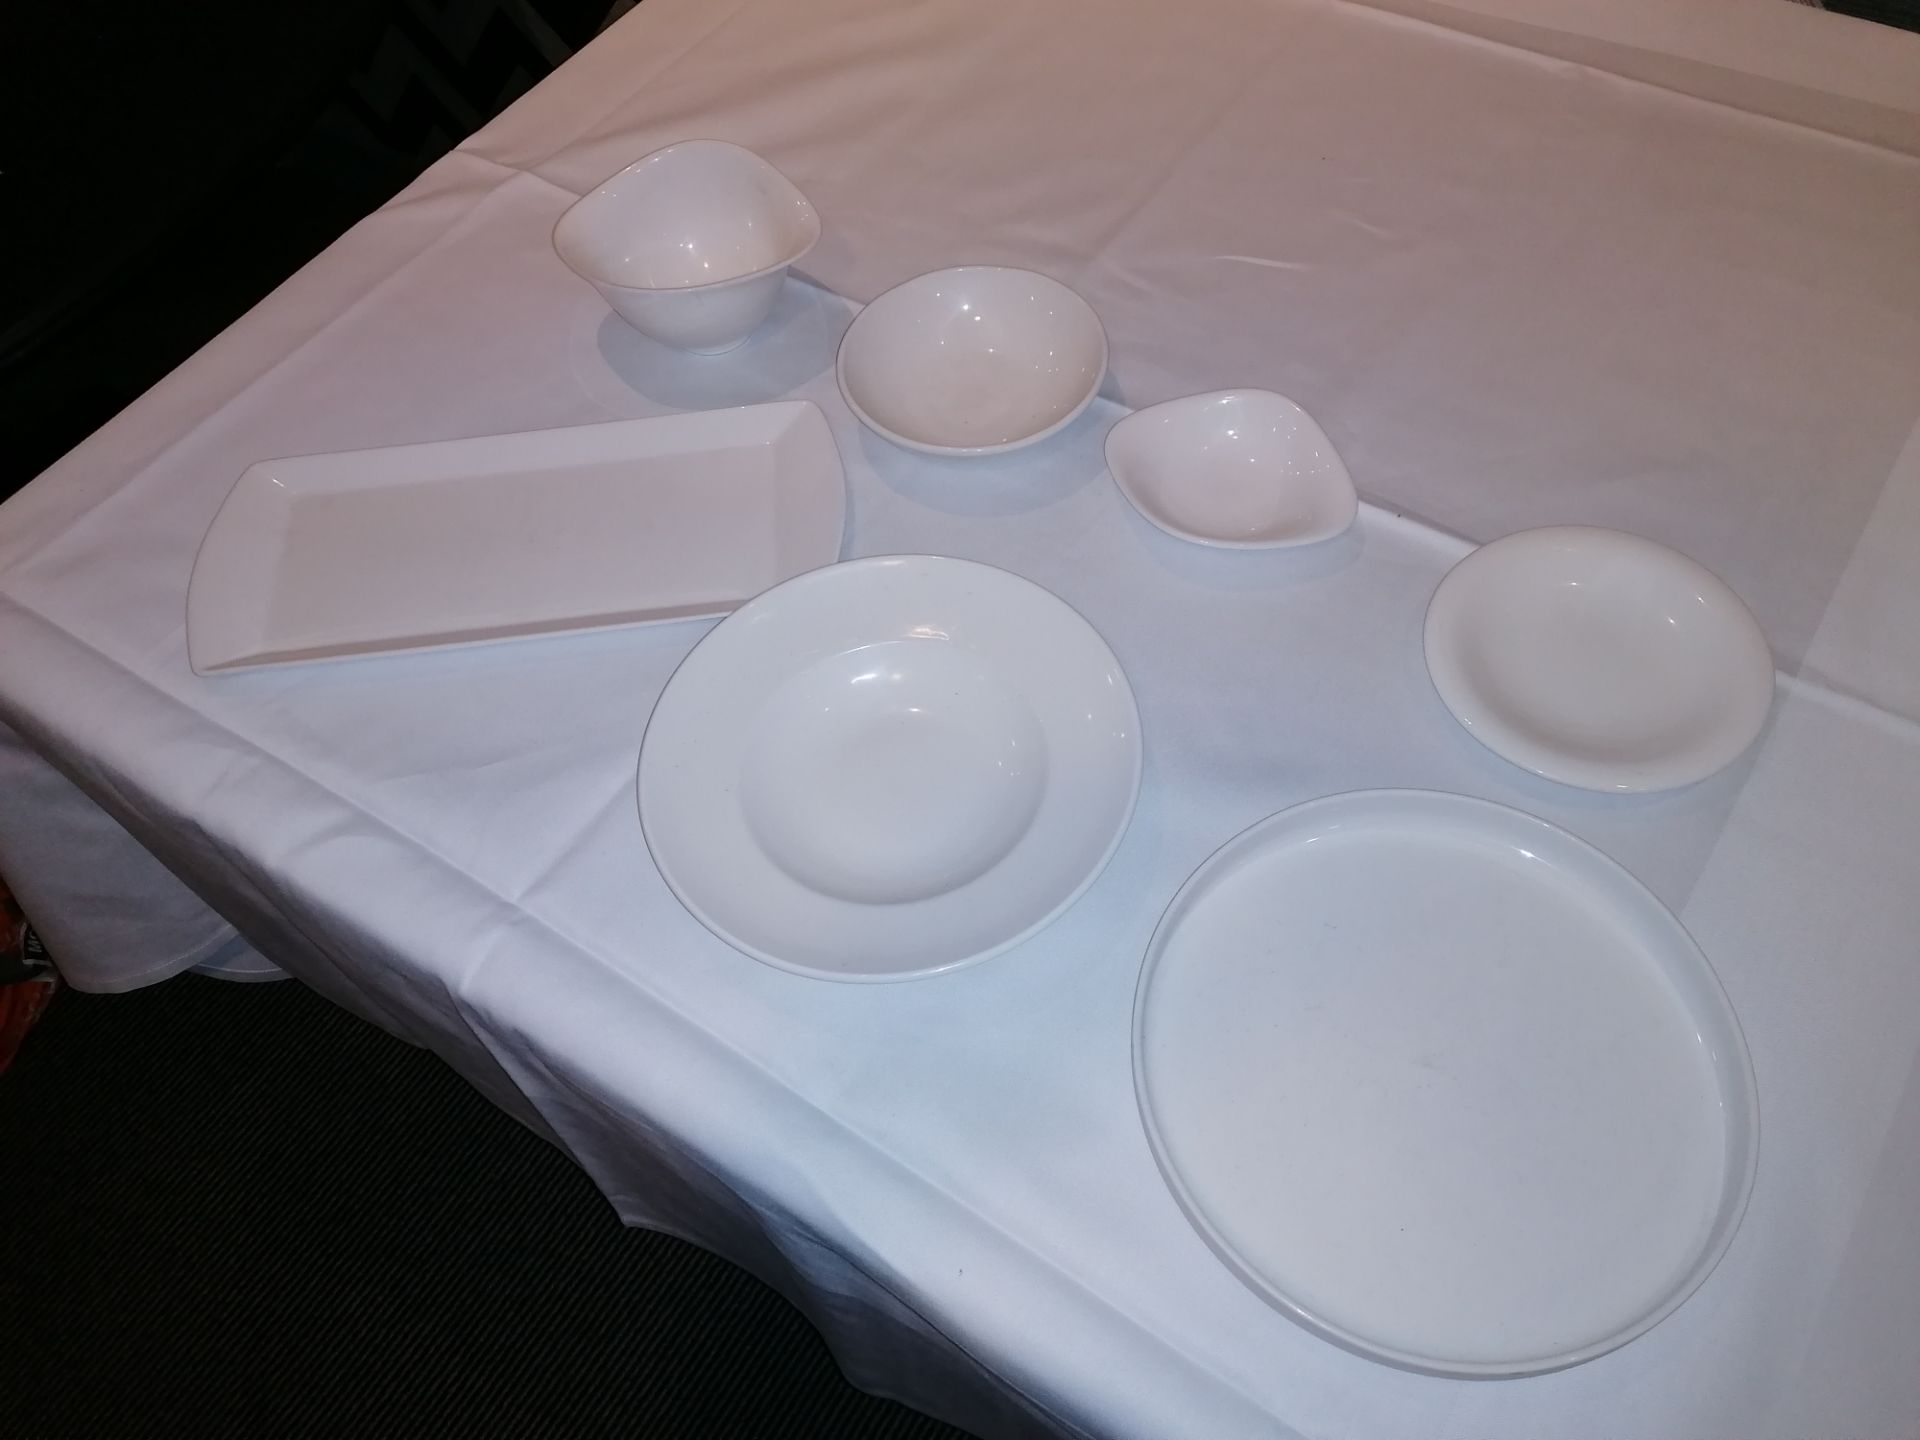 60+ porcerlain/ ceramic dishes from Villeroy & Boc - Image 3 of 5